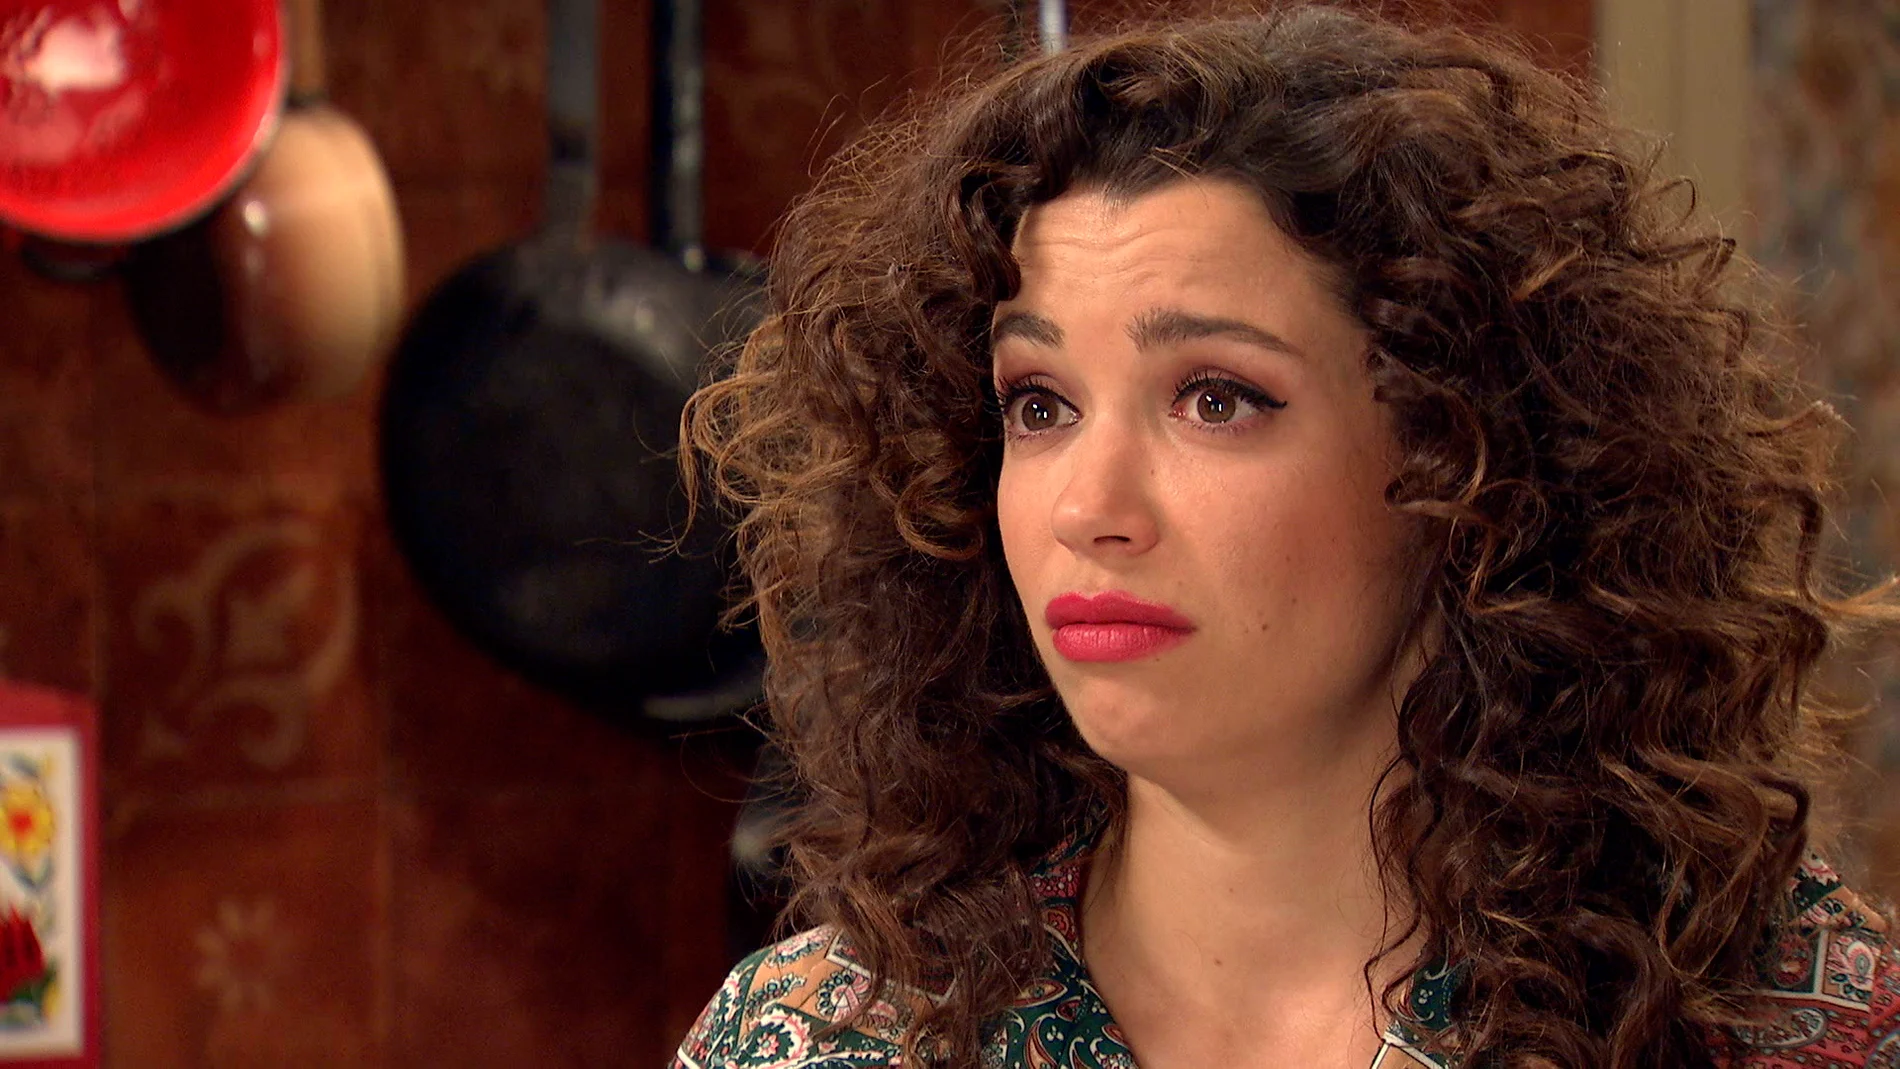 ‘Amar es para siempre’: Amelia confiesa a Marcelino que cree que Luisita la ha dejado de querer